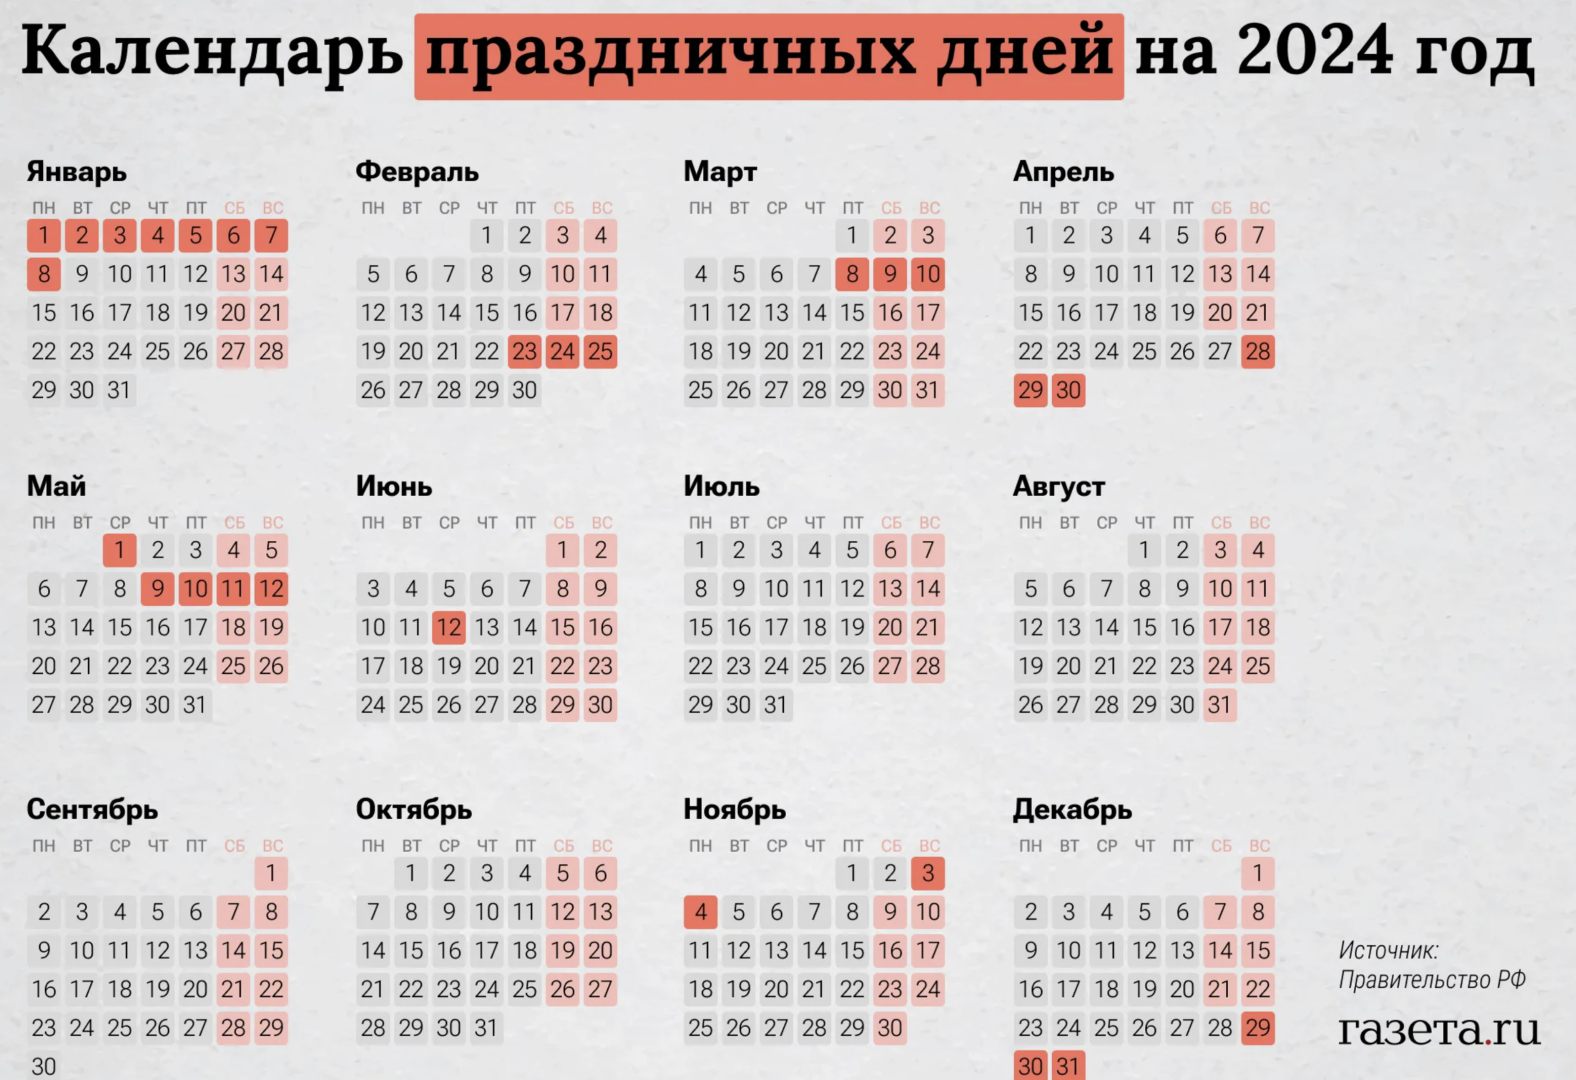 Праздничные дни в апреле 2024 в башкирии. Календарь выходных. Выходные и праздничные дни в 2024 в России. Кадендарьпраздников. Нерабочие праздничные дни в 2024 году в России.